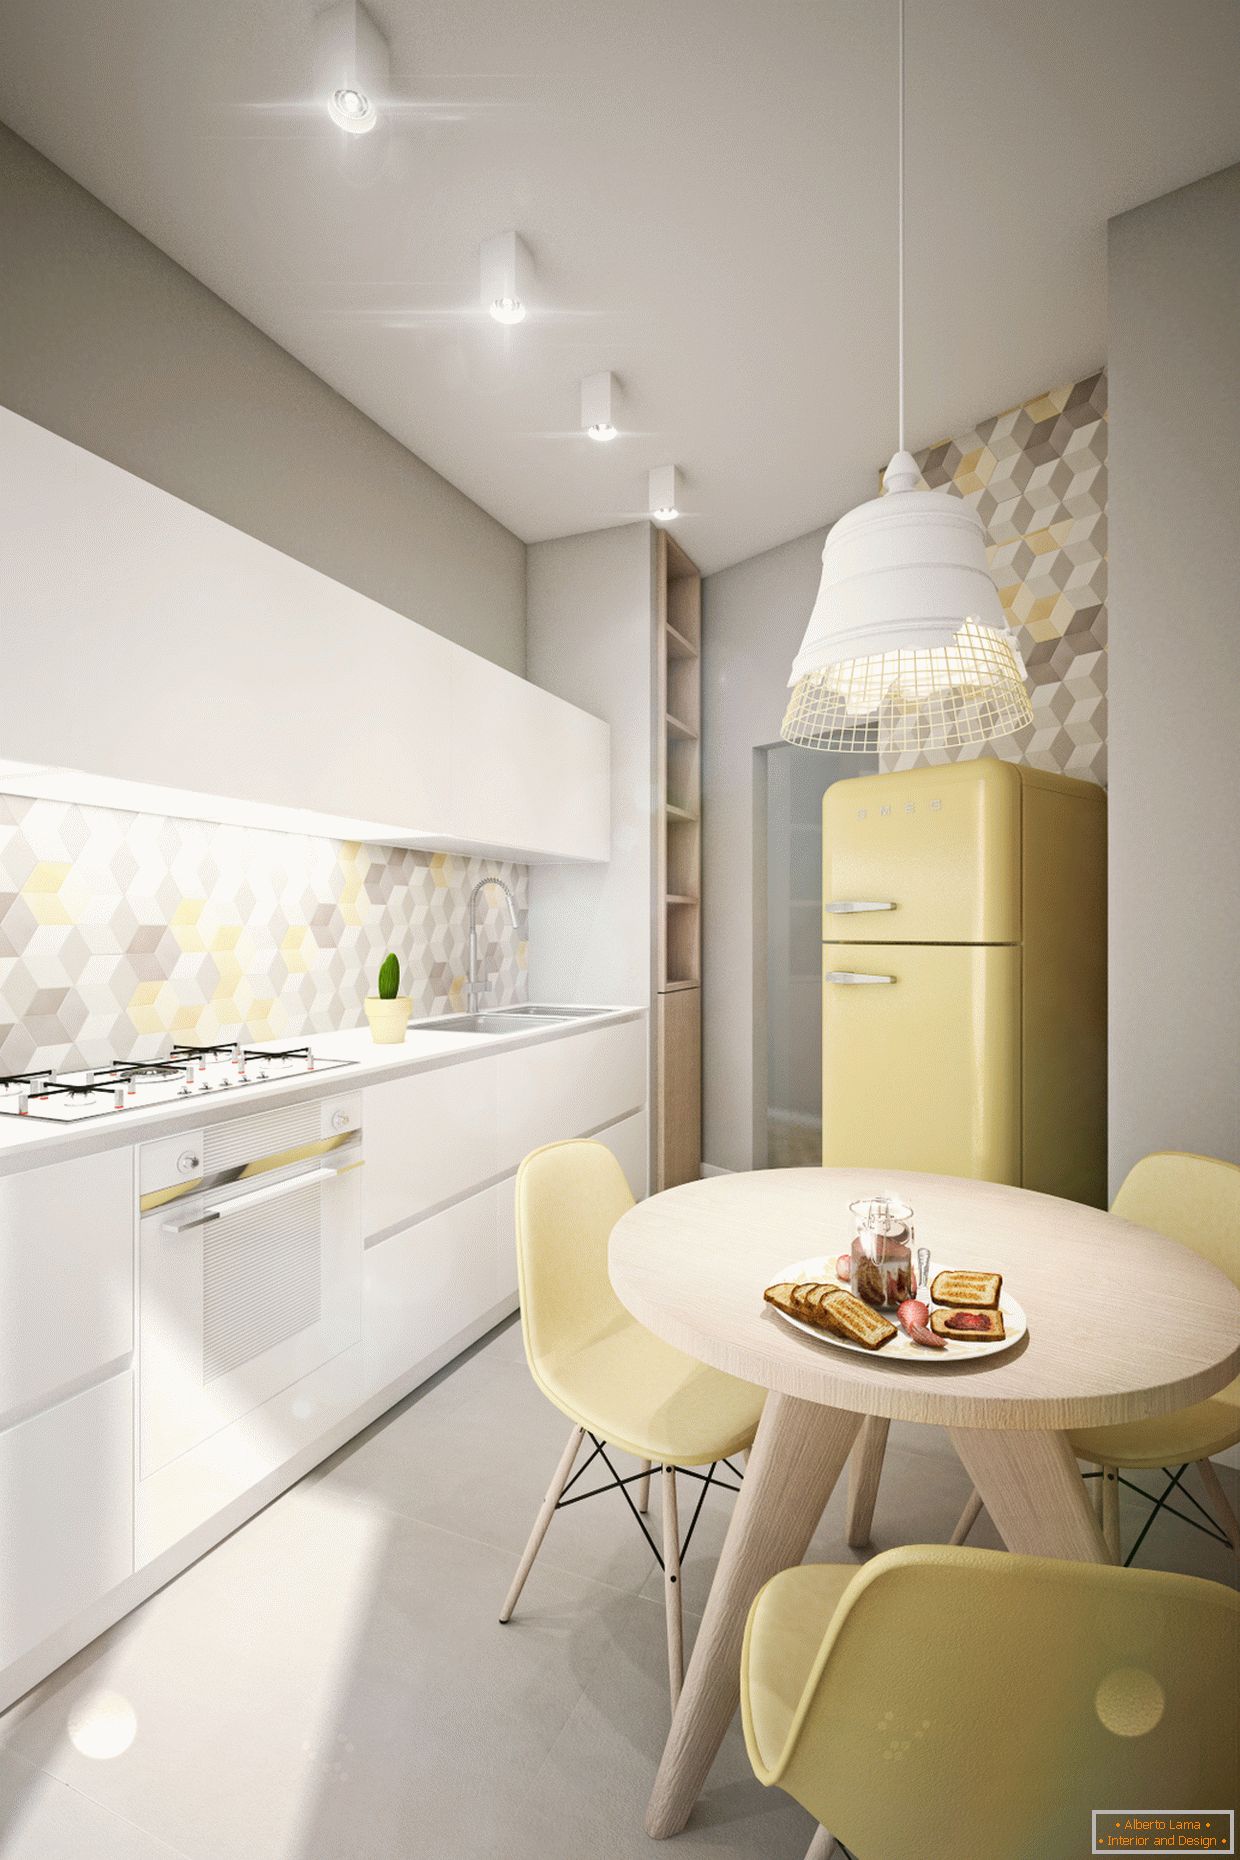 Appartamento di design in colori pastello: cucina